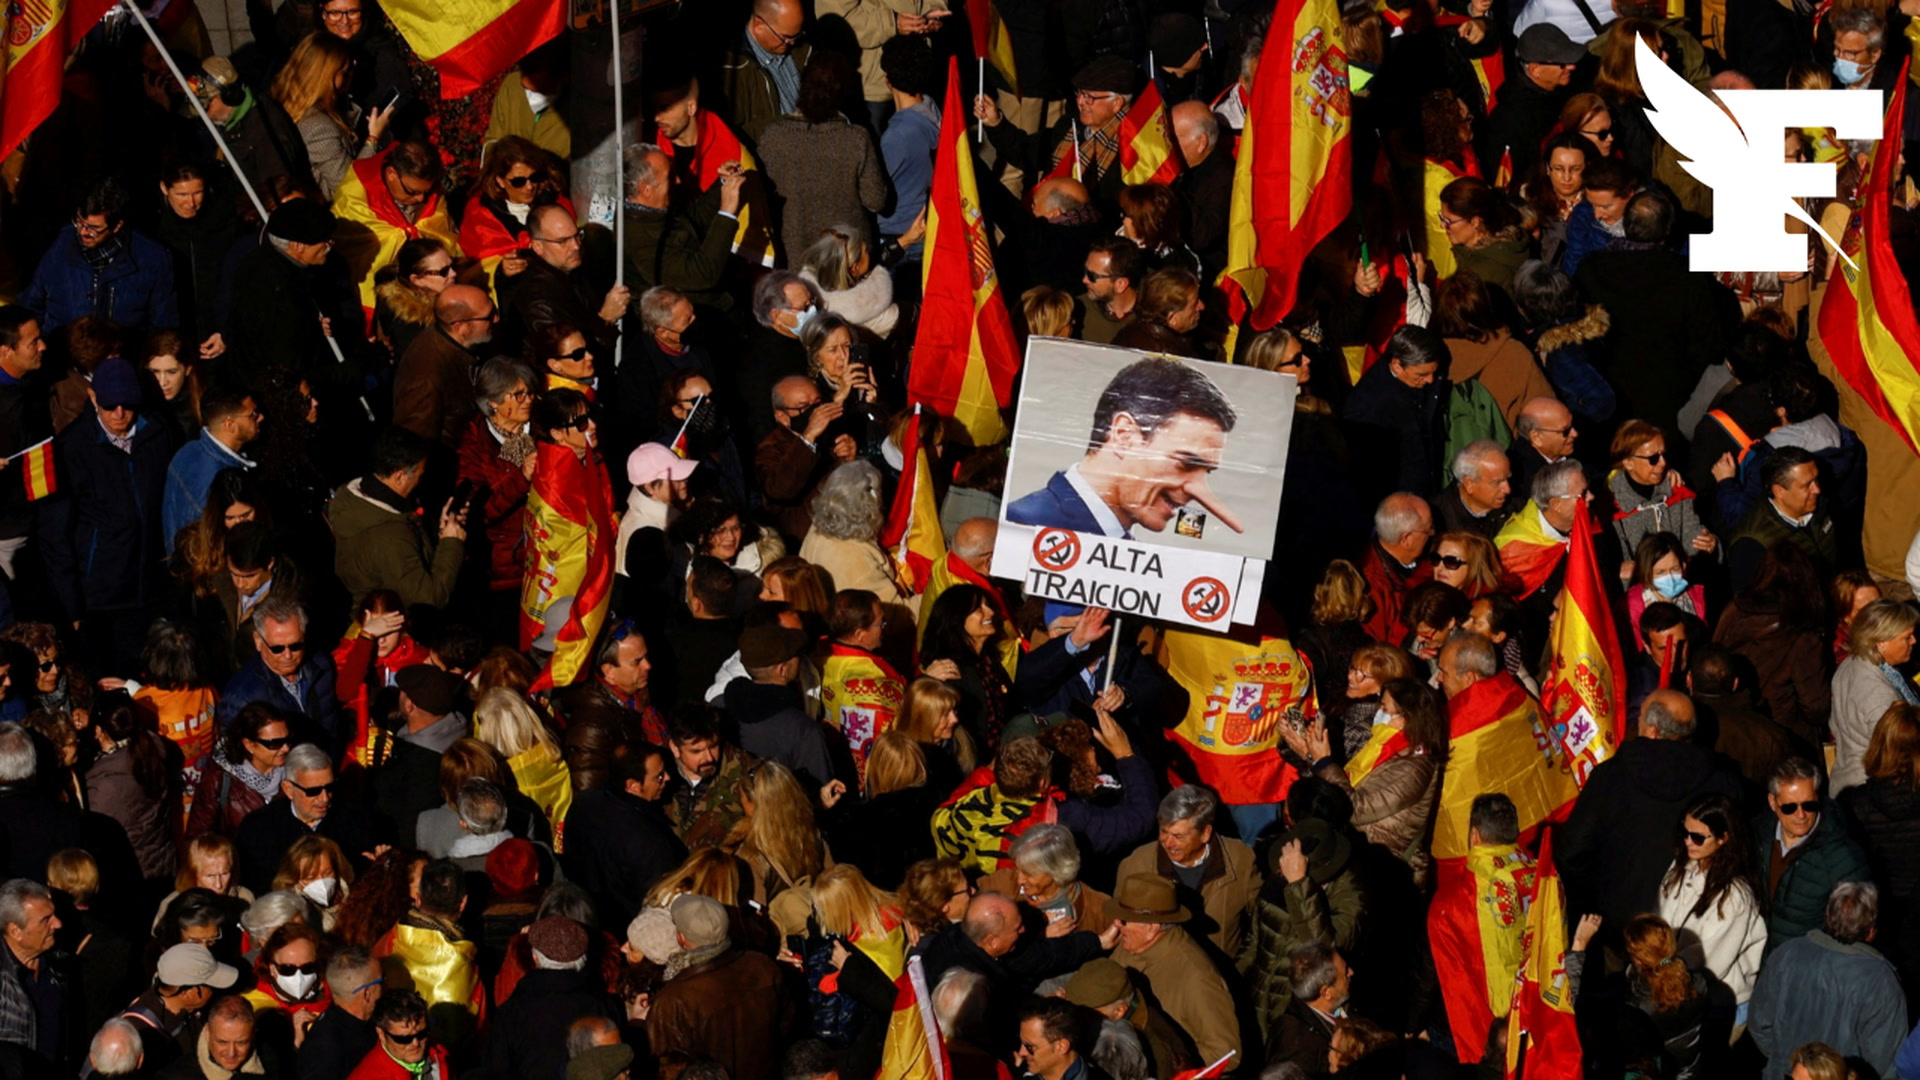 Santiago Abascal, le leader de Vox qui galvanise l'extrême droite